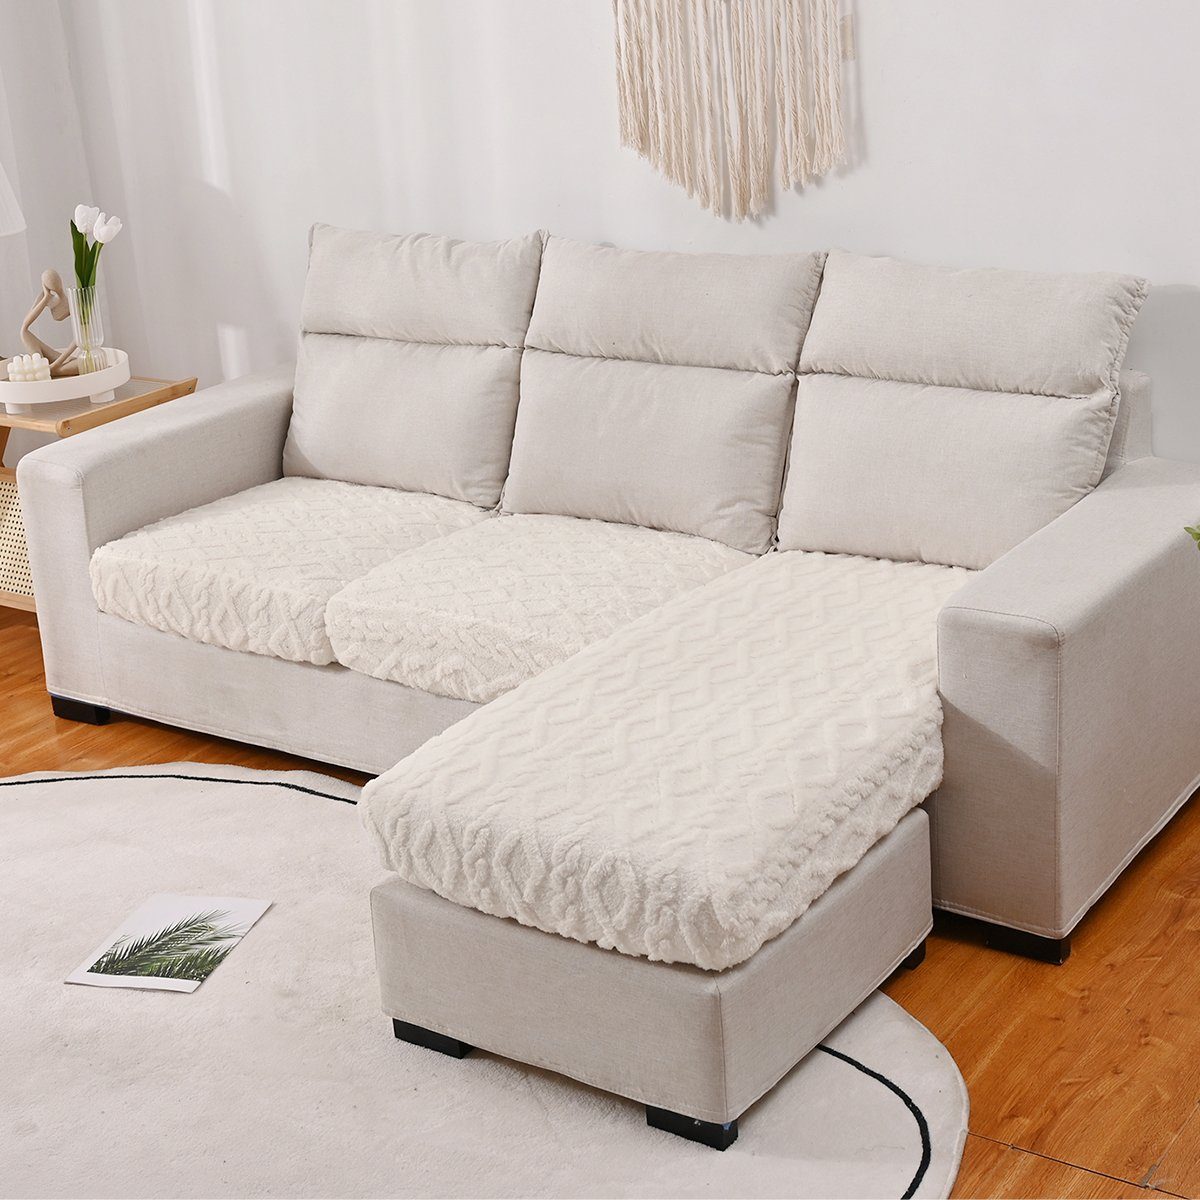 Sofahusse, HOMEIDEAS, Sofabezug L Form elastisch, Couch überzug